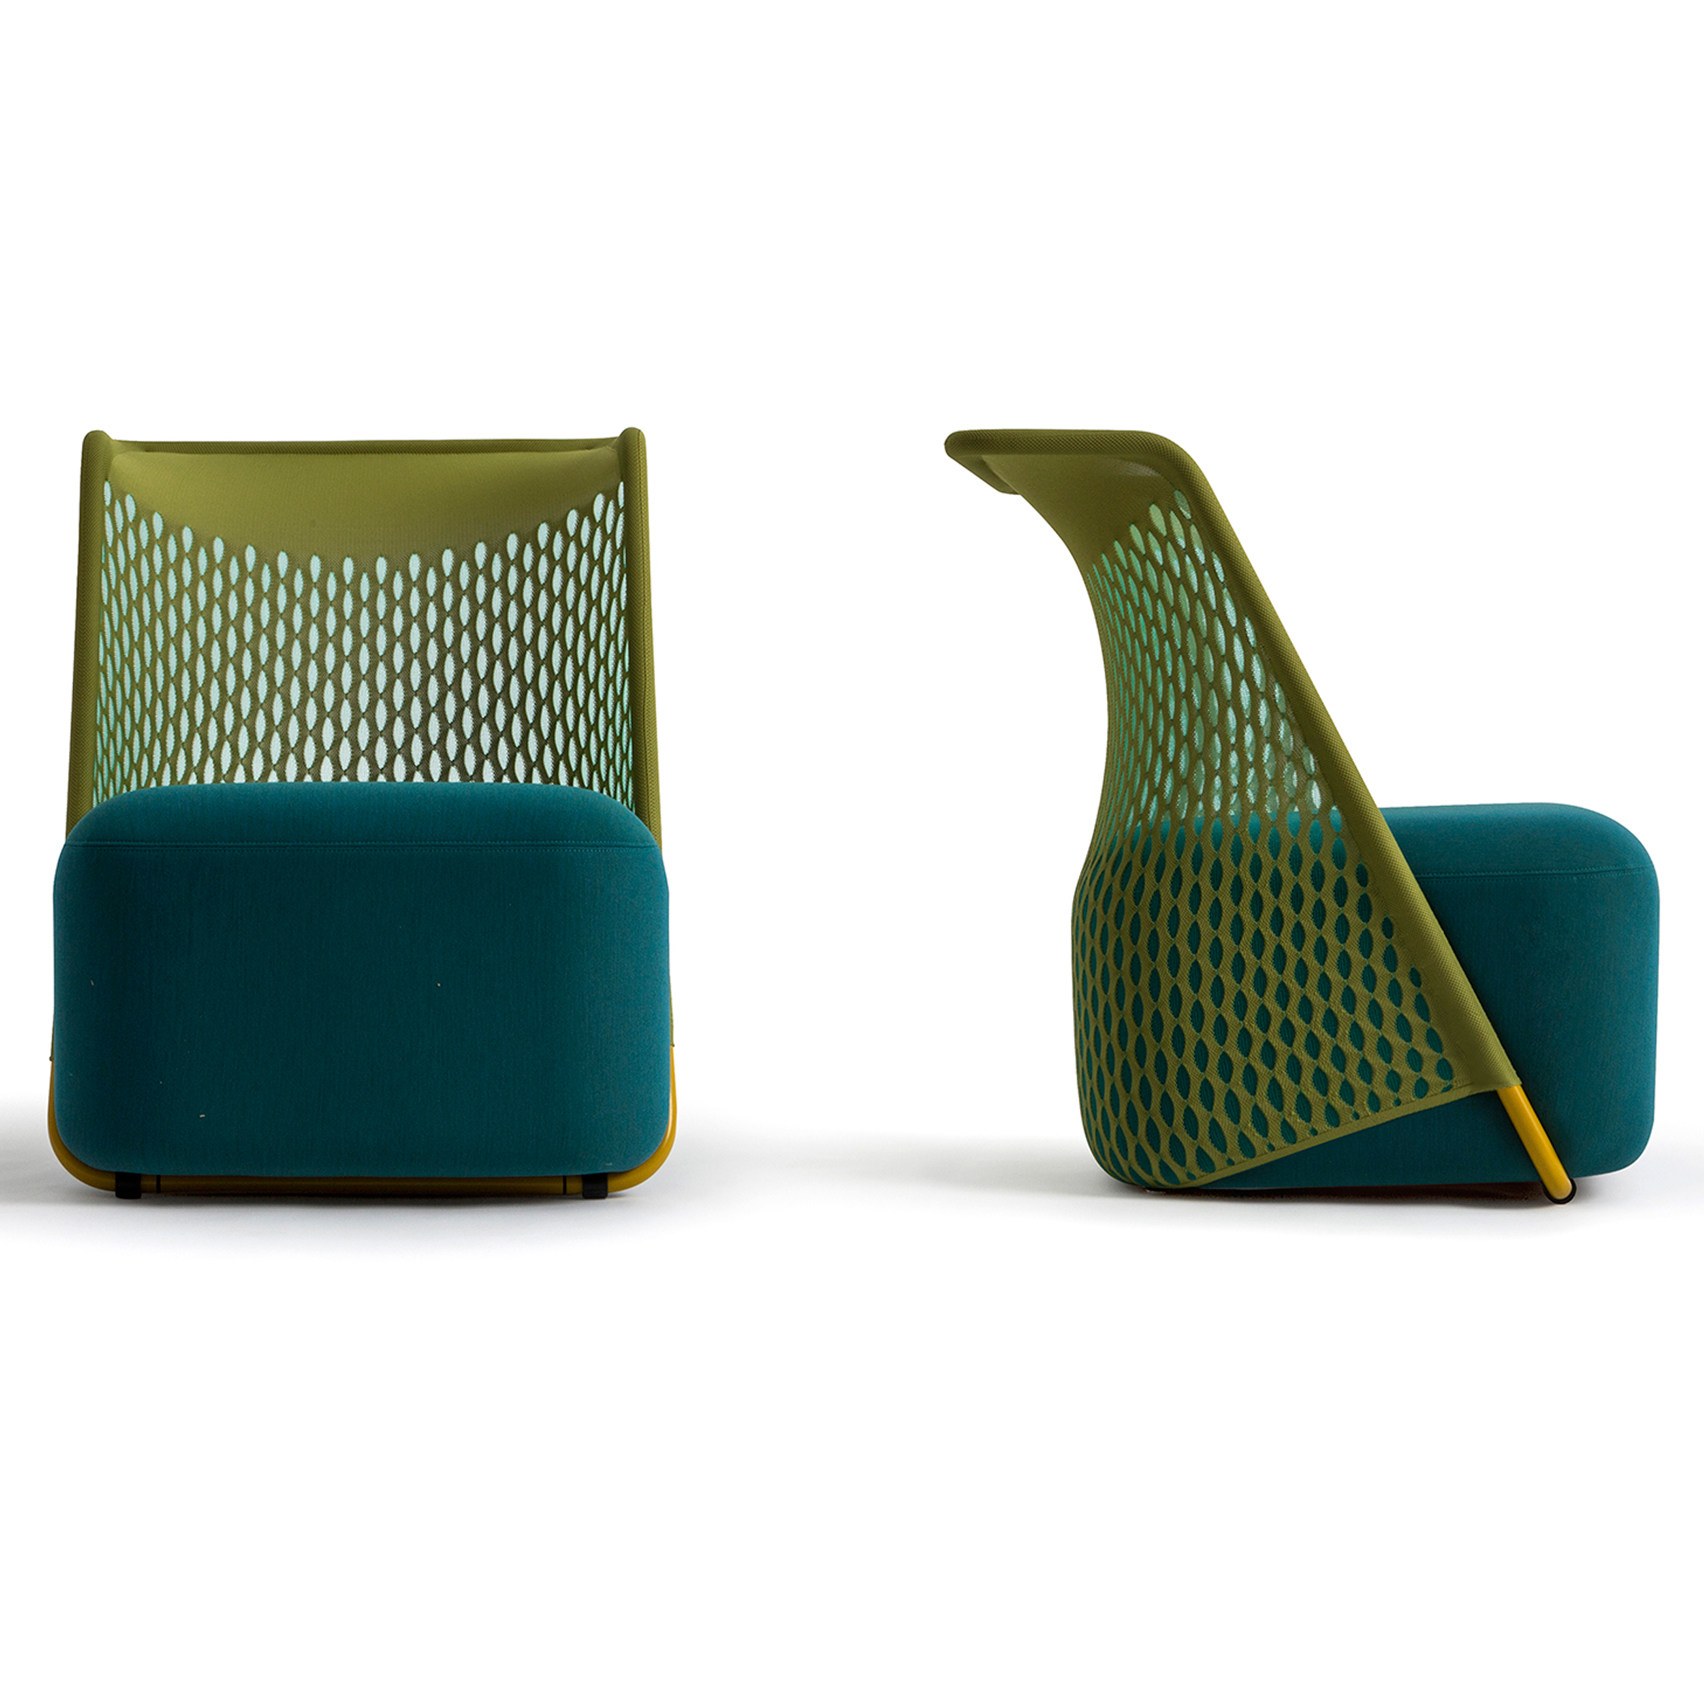 benjamin-hubert-layer-cradle-chair-moroso-greenery-pantone-colour-of-the-year-dezeen_1704